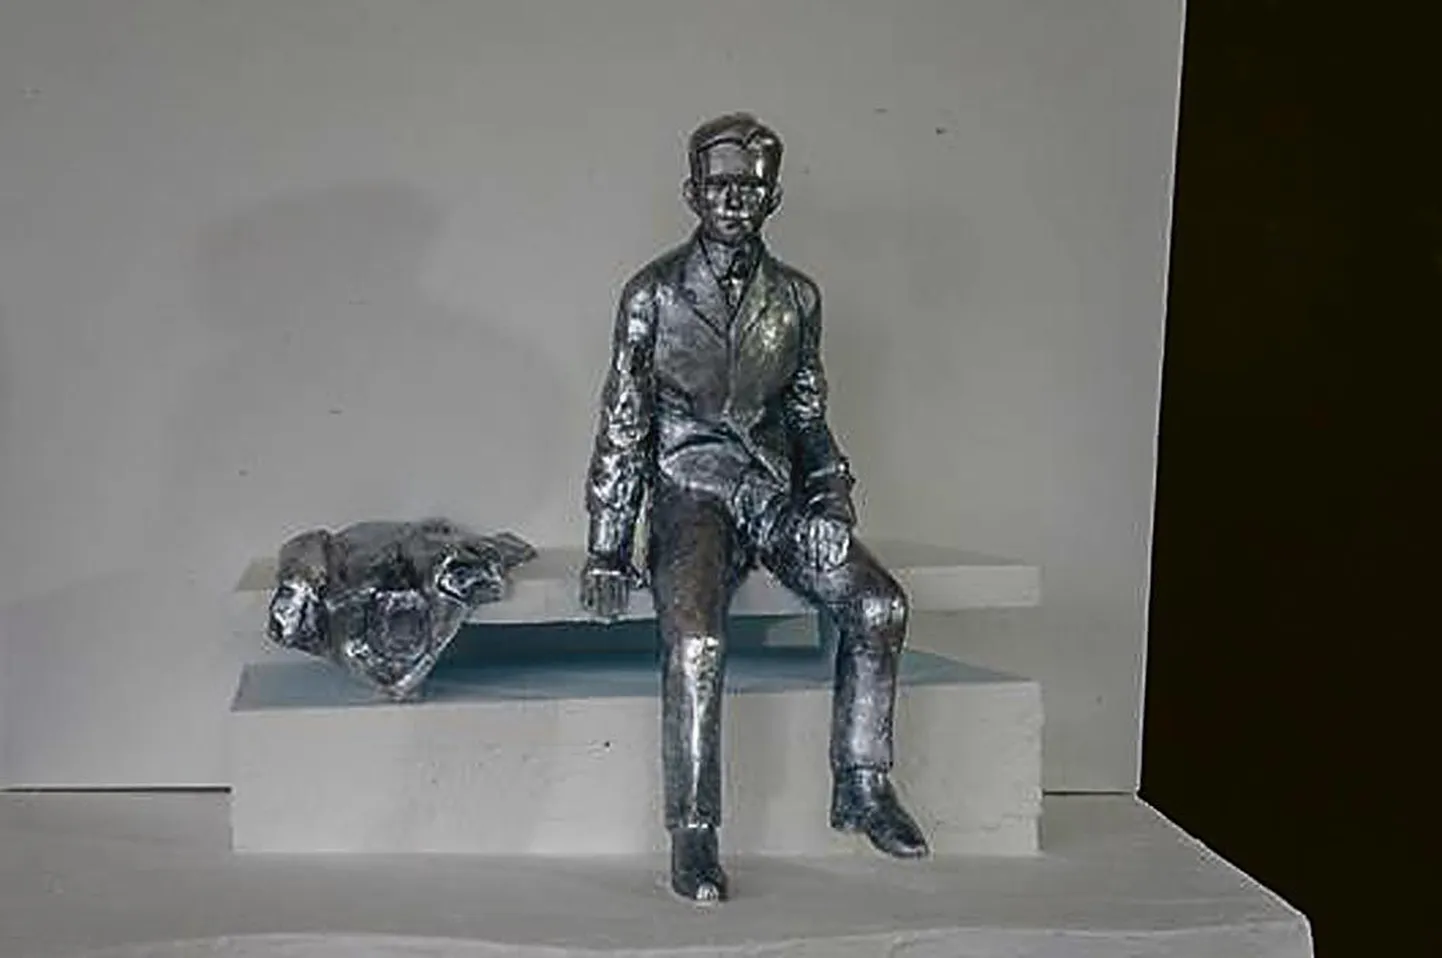 Skulptuur on kujuri käe all omandanud isikupärase väljanägemise. Fotol vähendatud mõõtmetes mudel.